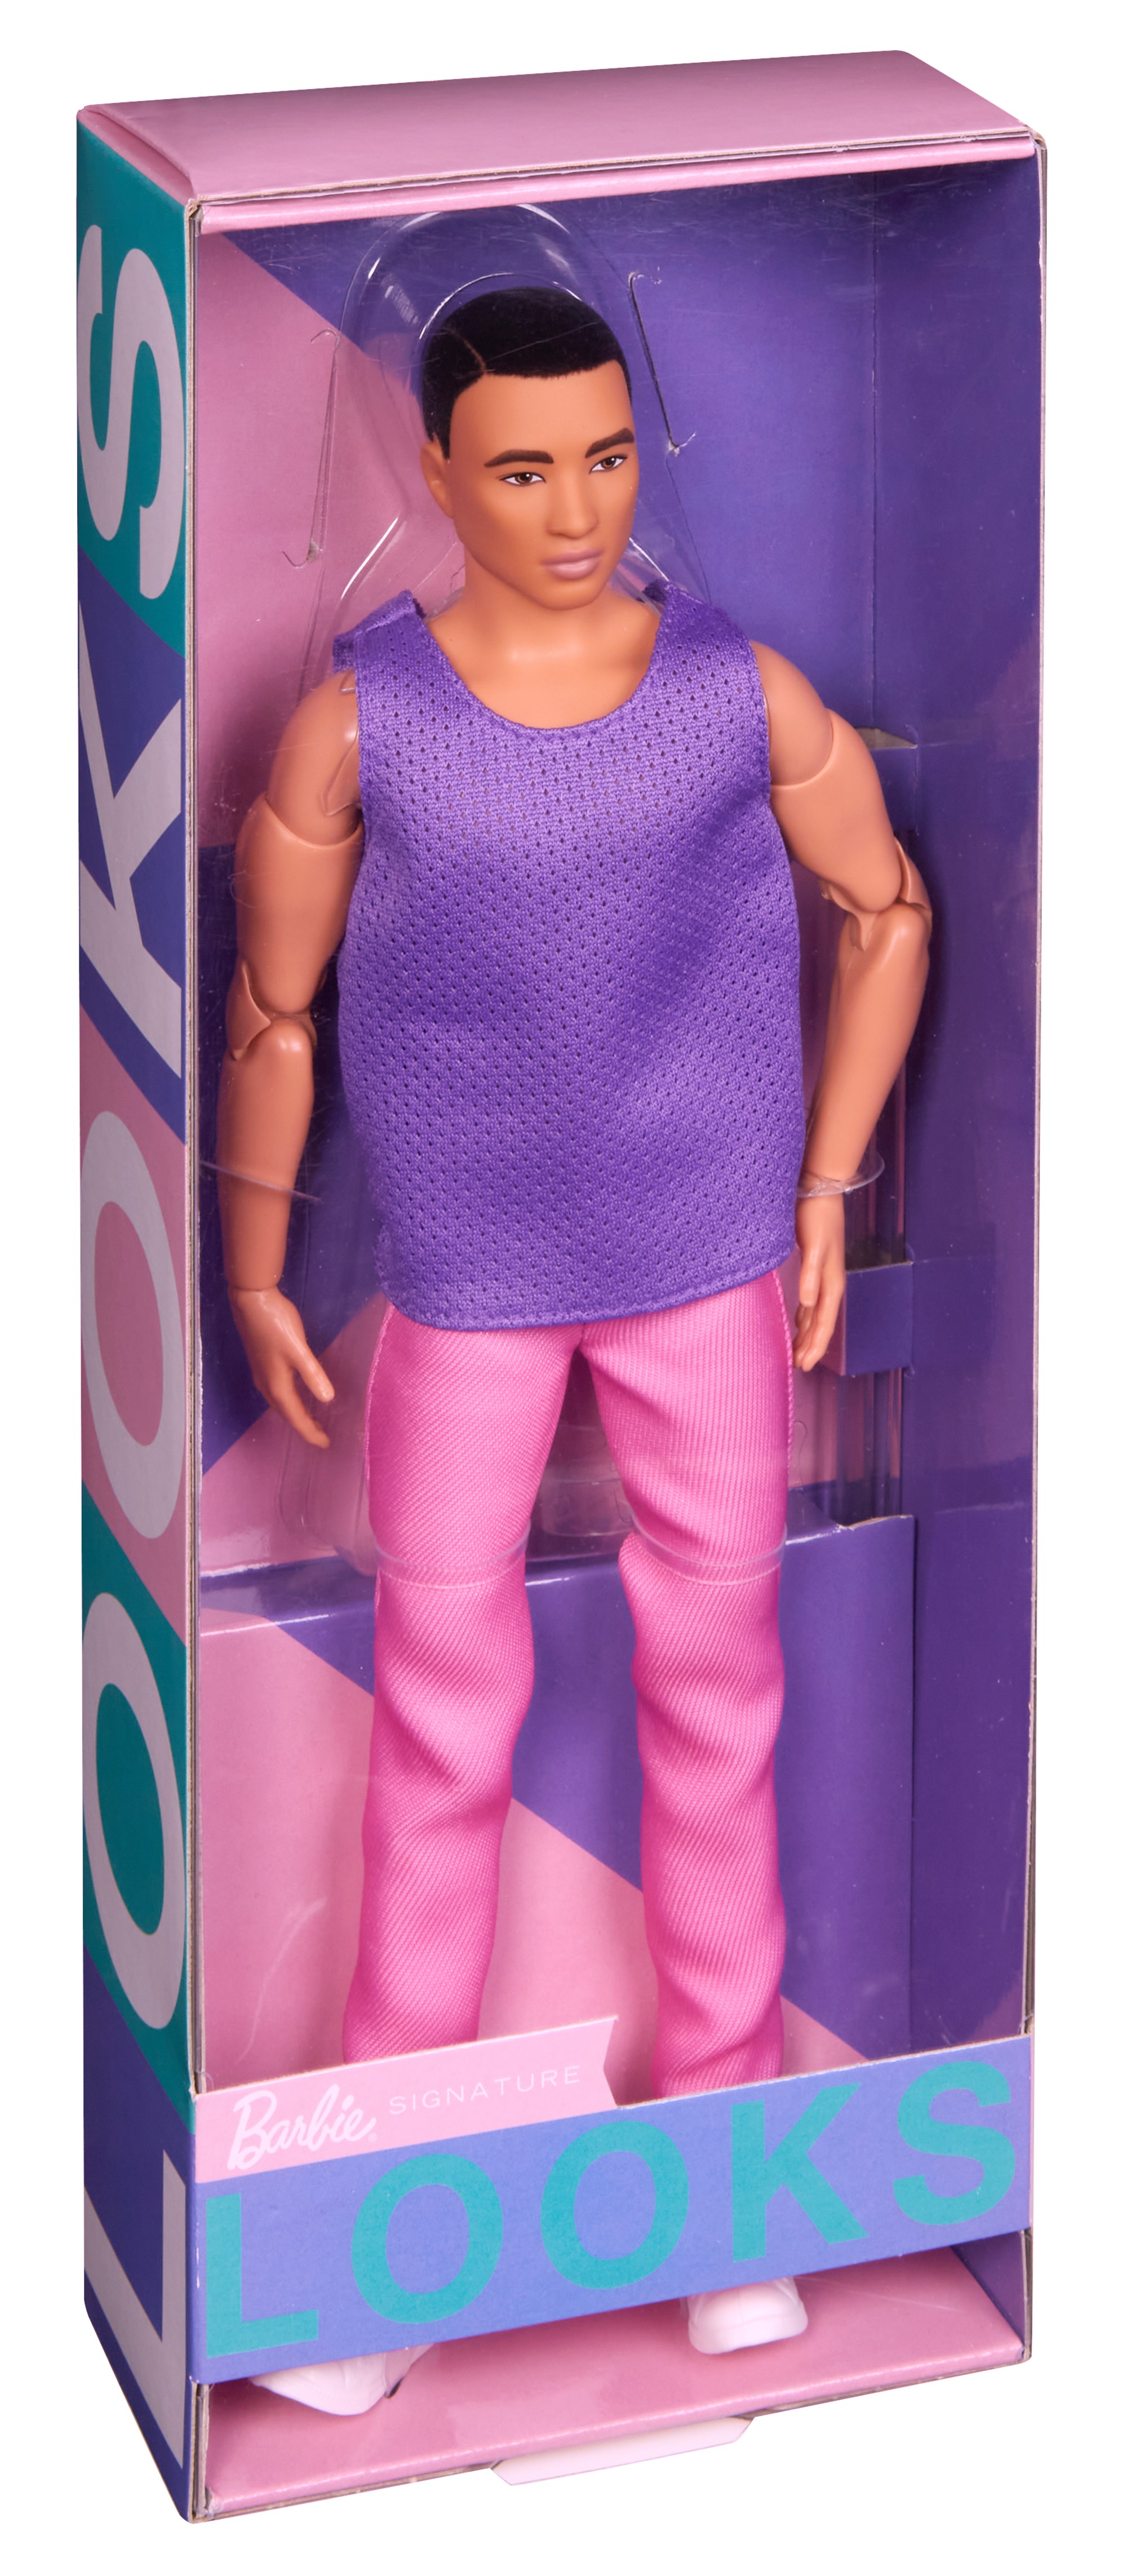 Ken Barbie Looks, Black Hair, Purple Top With Pink Pants - B`n